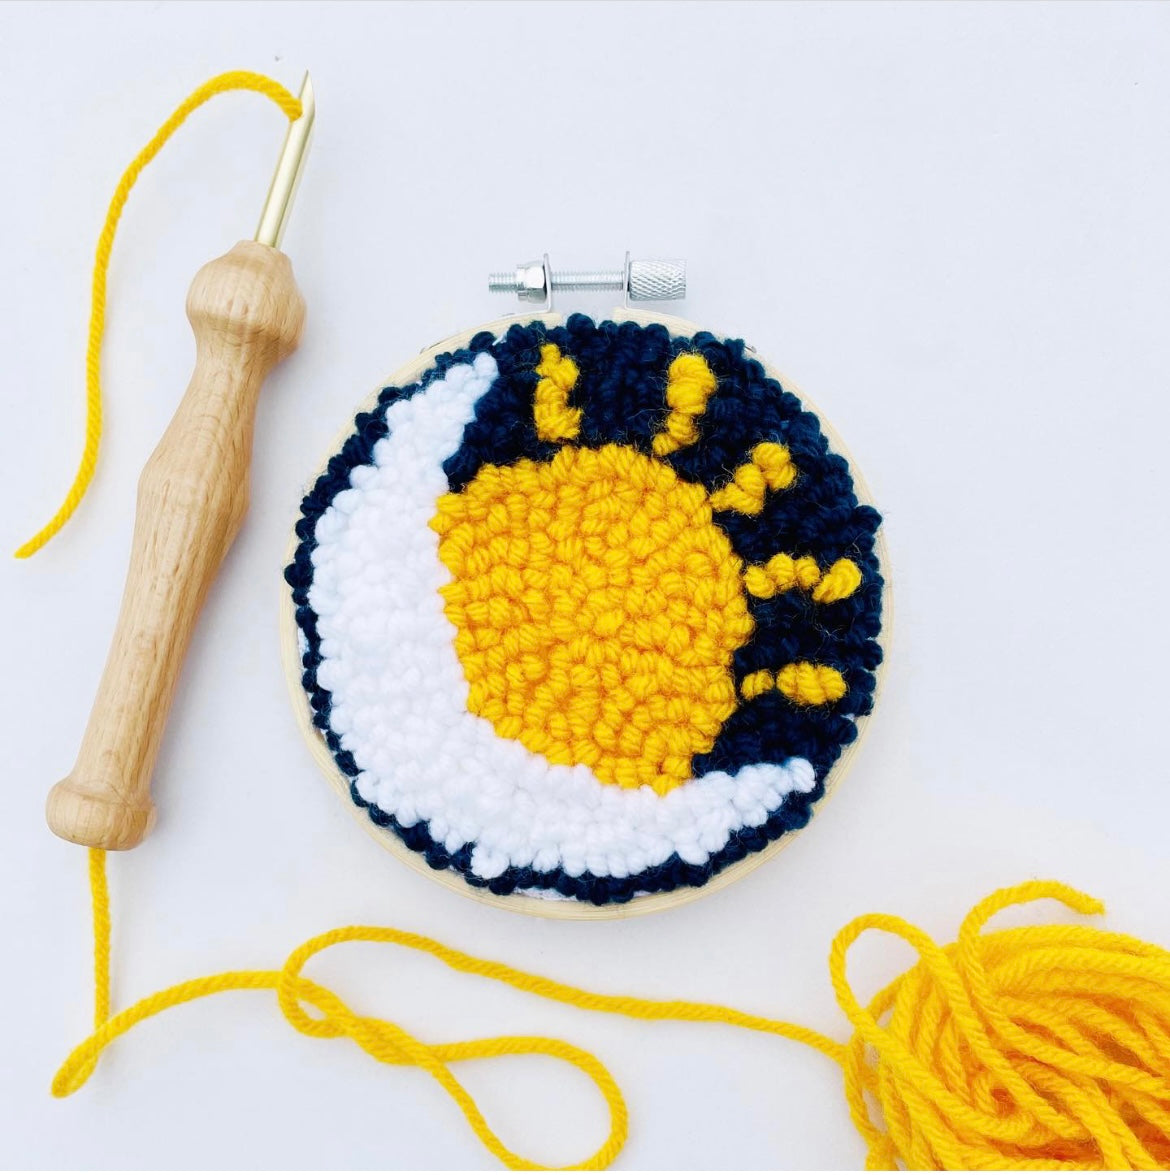 diy embroidery kit crochet kit for